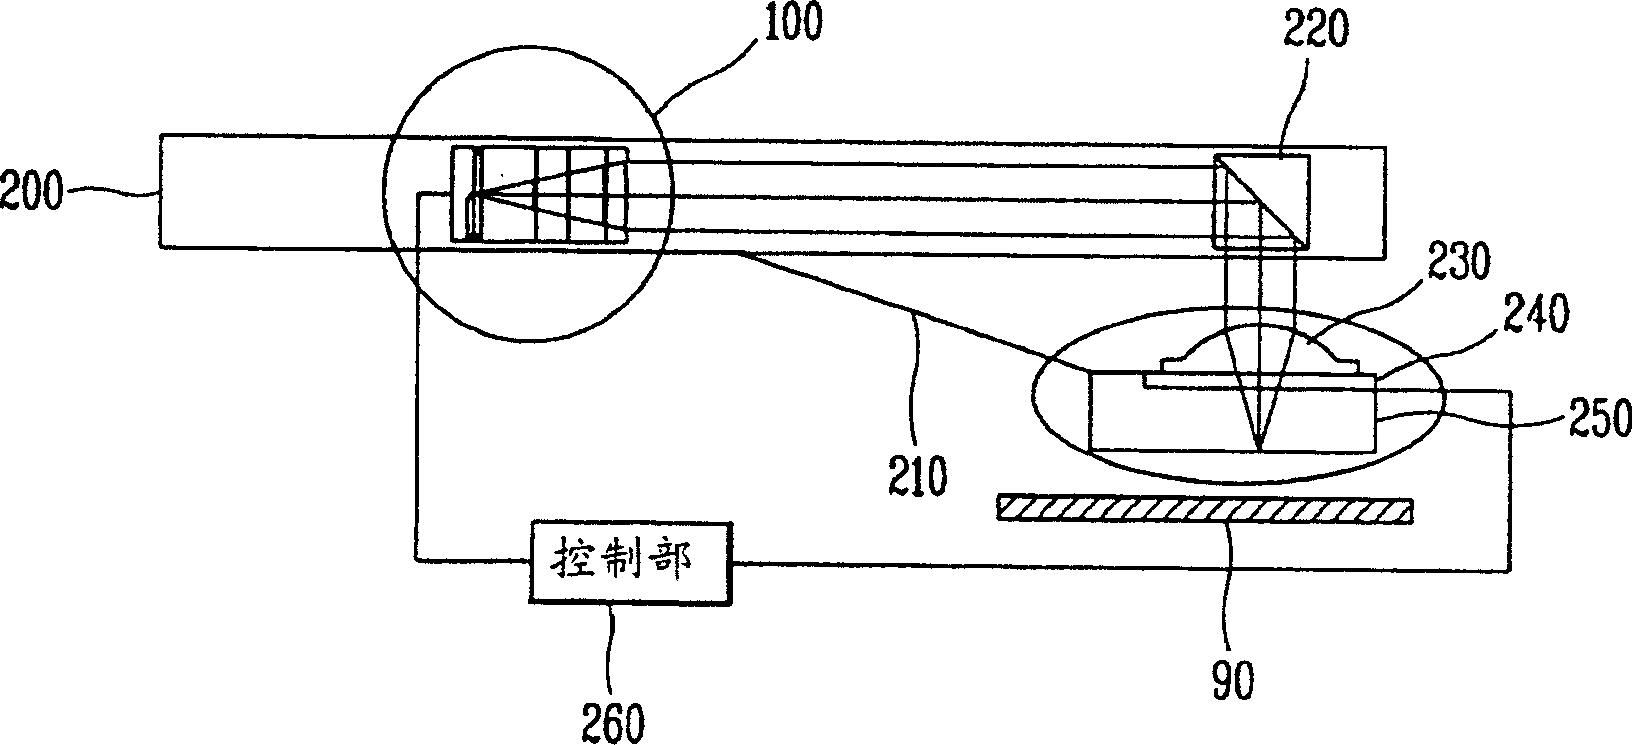 Basic optical unit of optical disc playing device